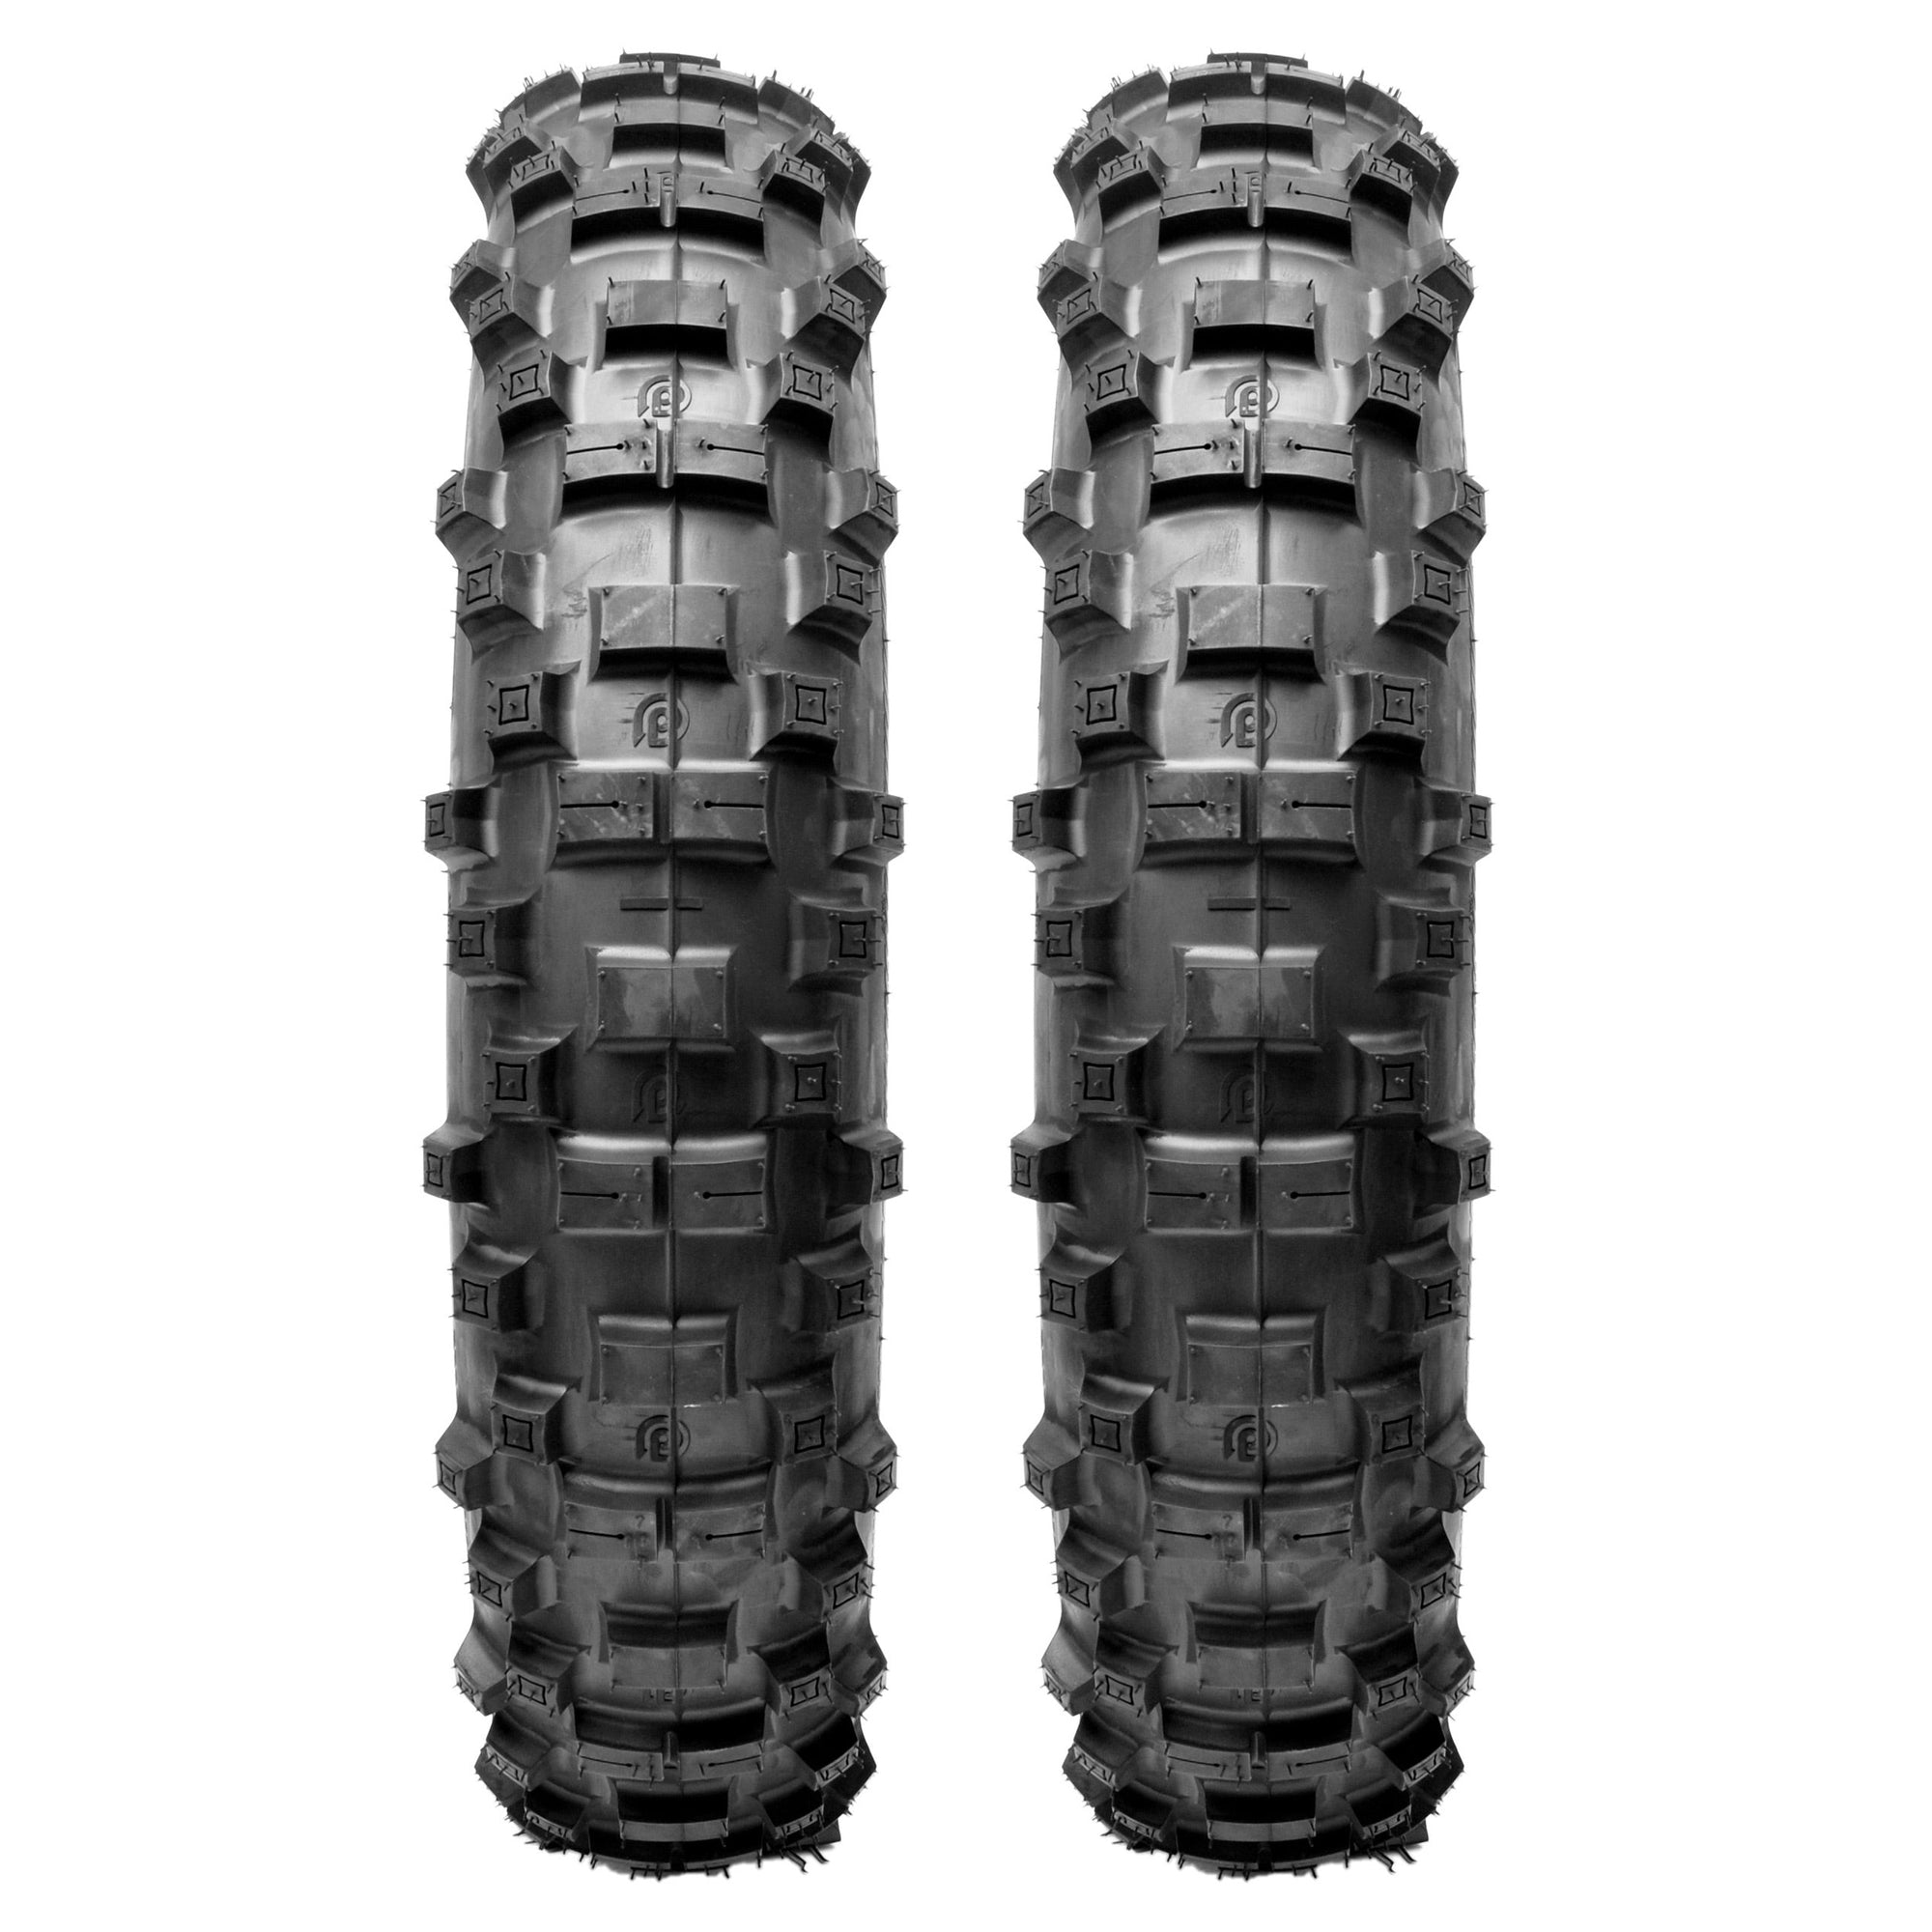 Plews Tyres | GP Enduro Double Rear Set | Two EN1 GRAND PRIX Rear Enduro Tire Bundle - perspective view